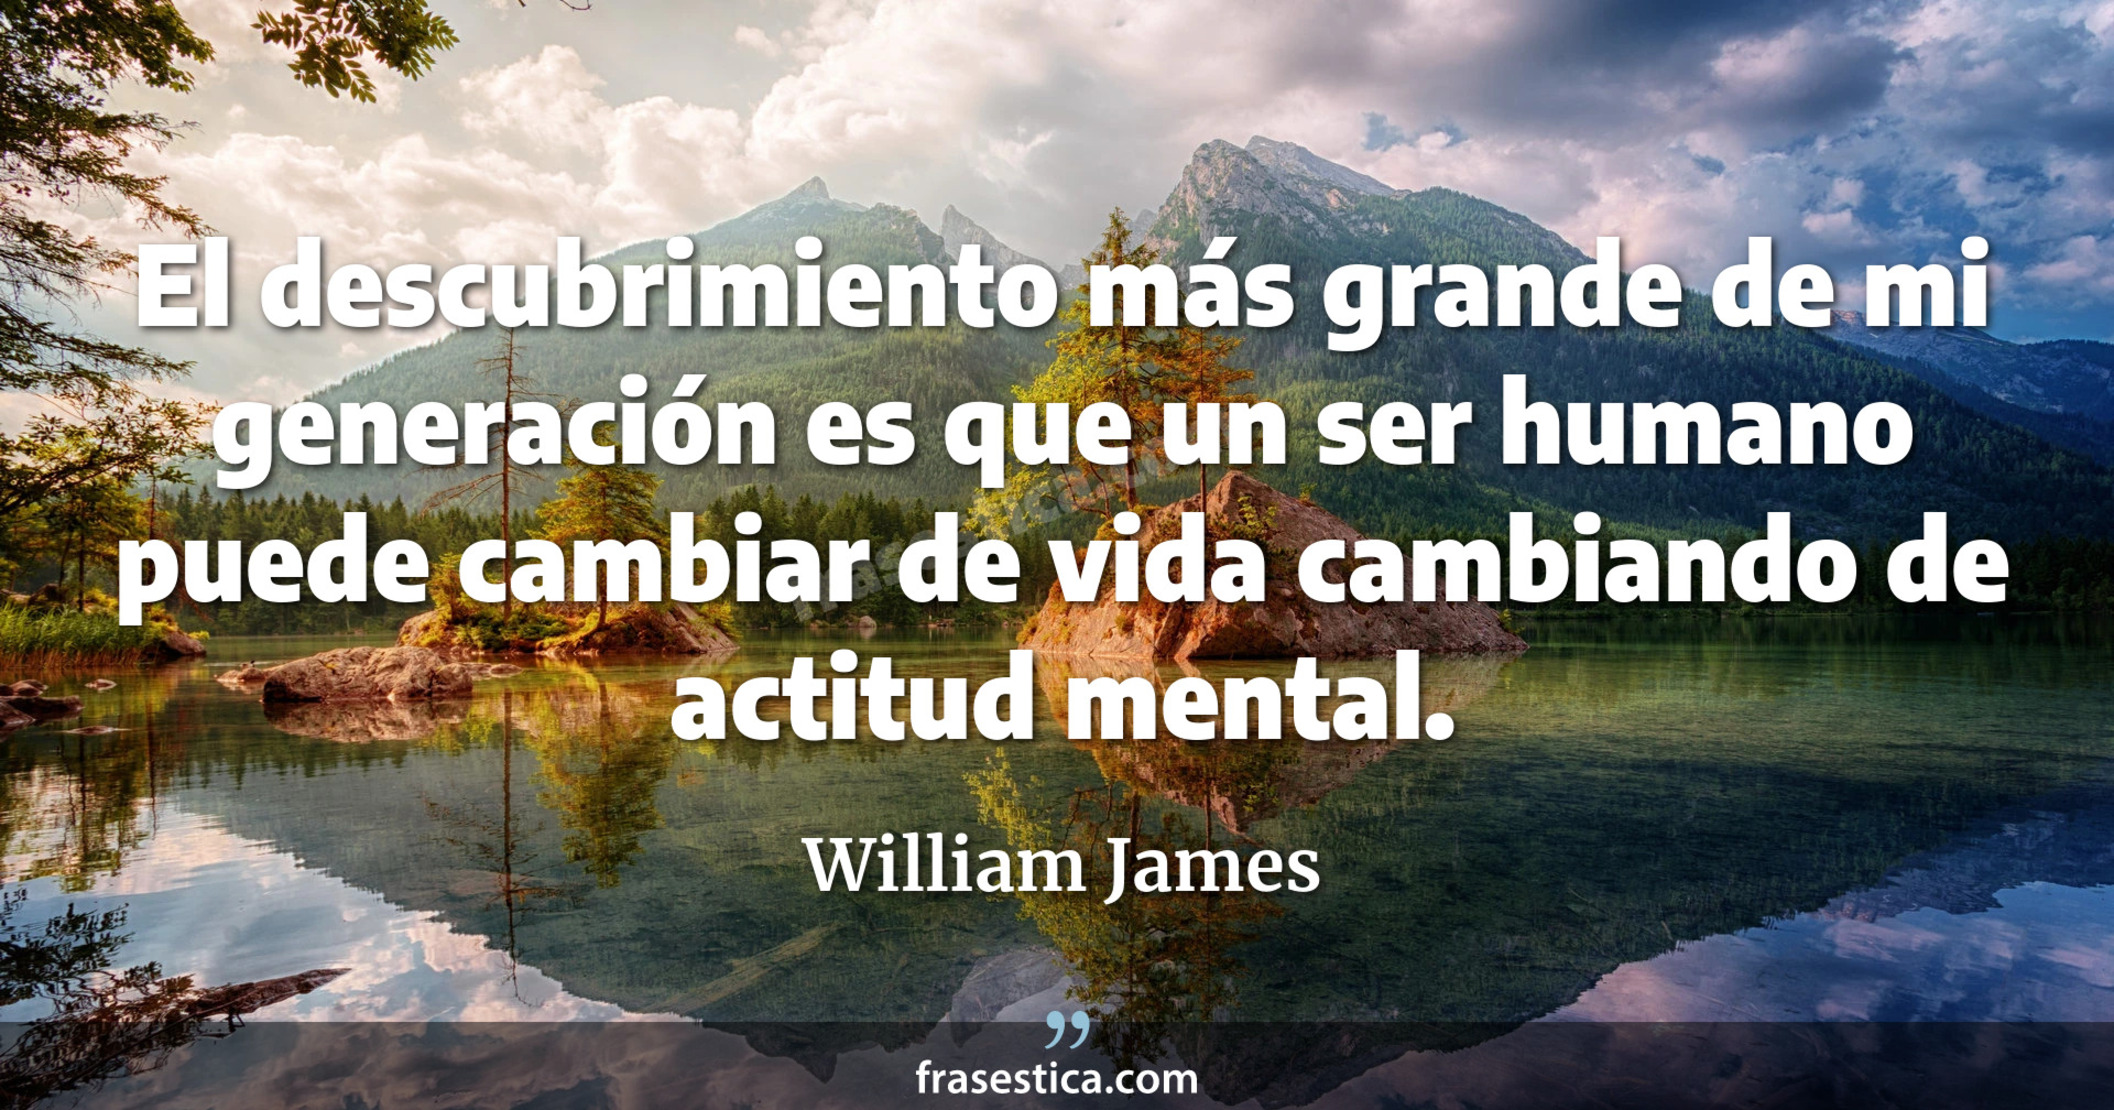 El descubrimiento más grande de mi generación es que un ser humano puede cambiar de vida cambiando de actitud mental. - William James